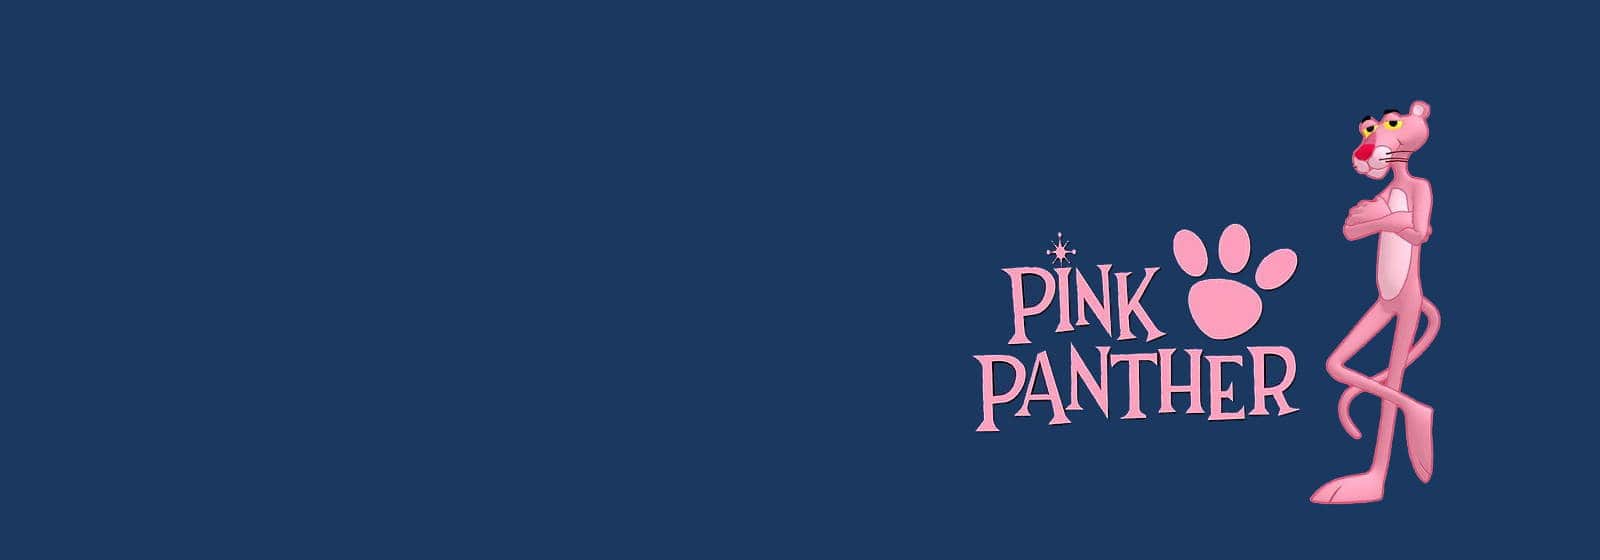 pink panther slot game